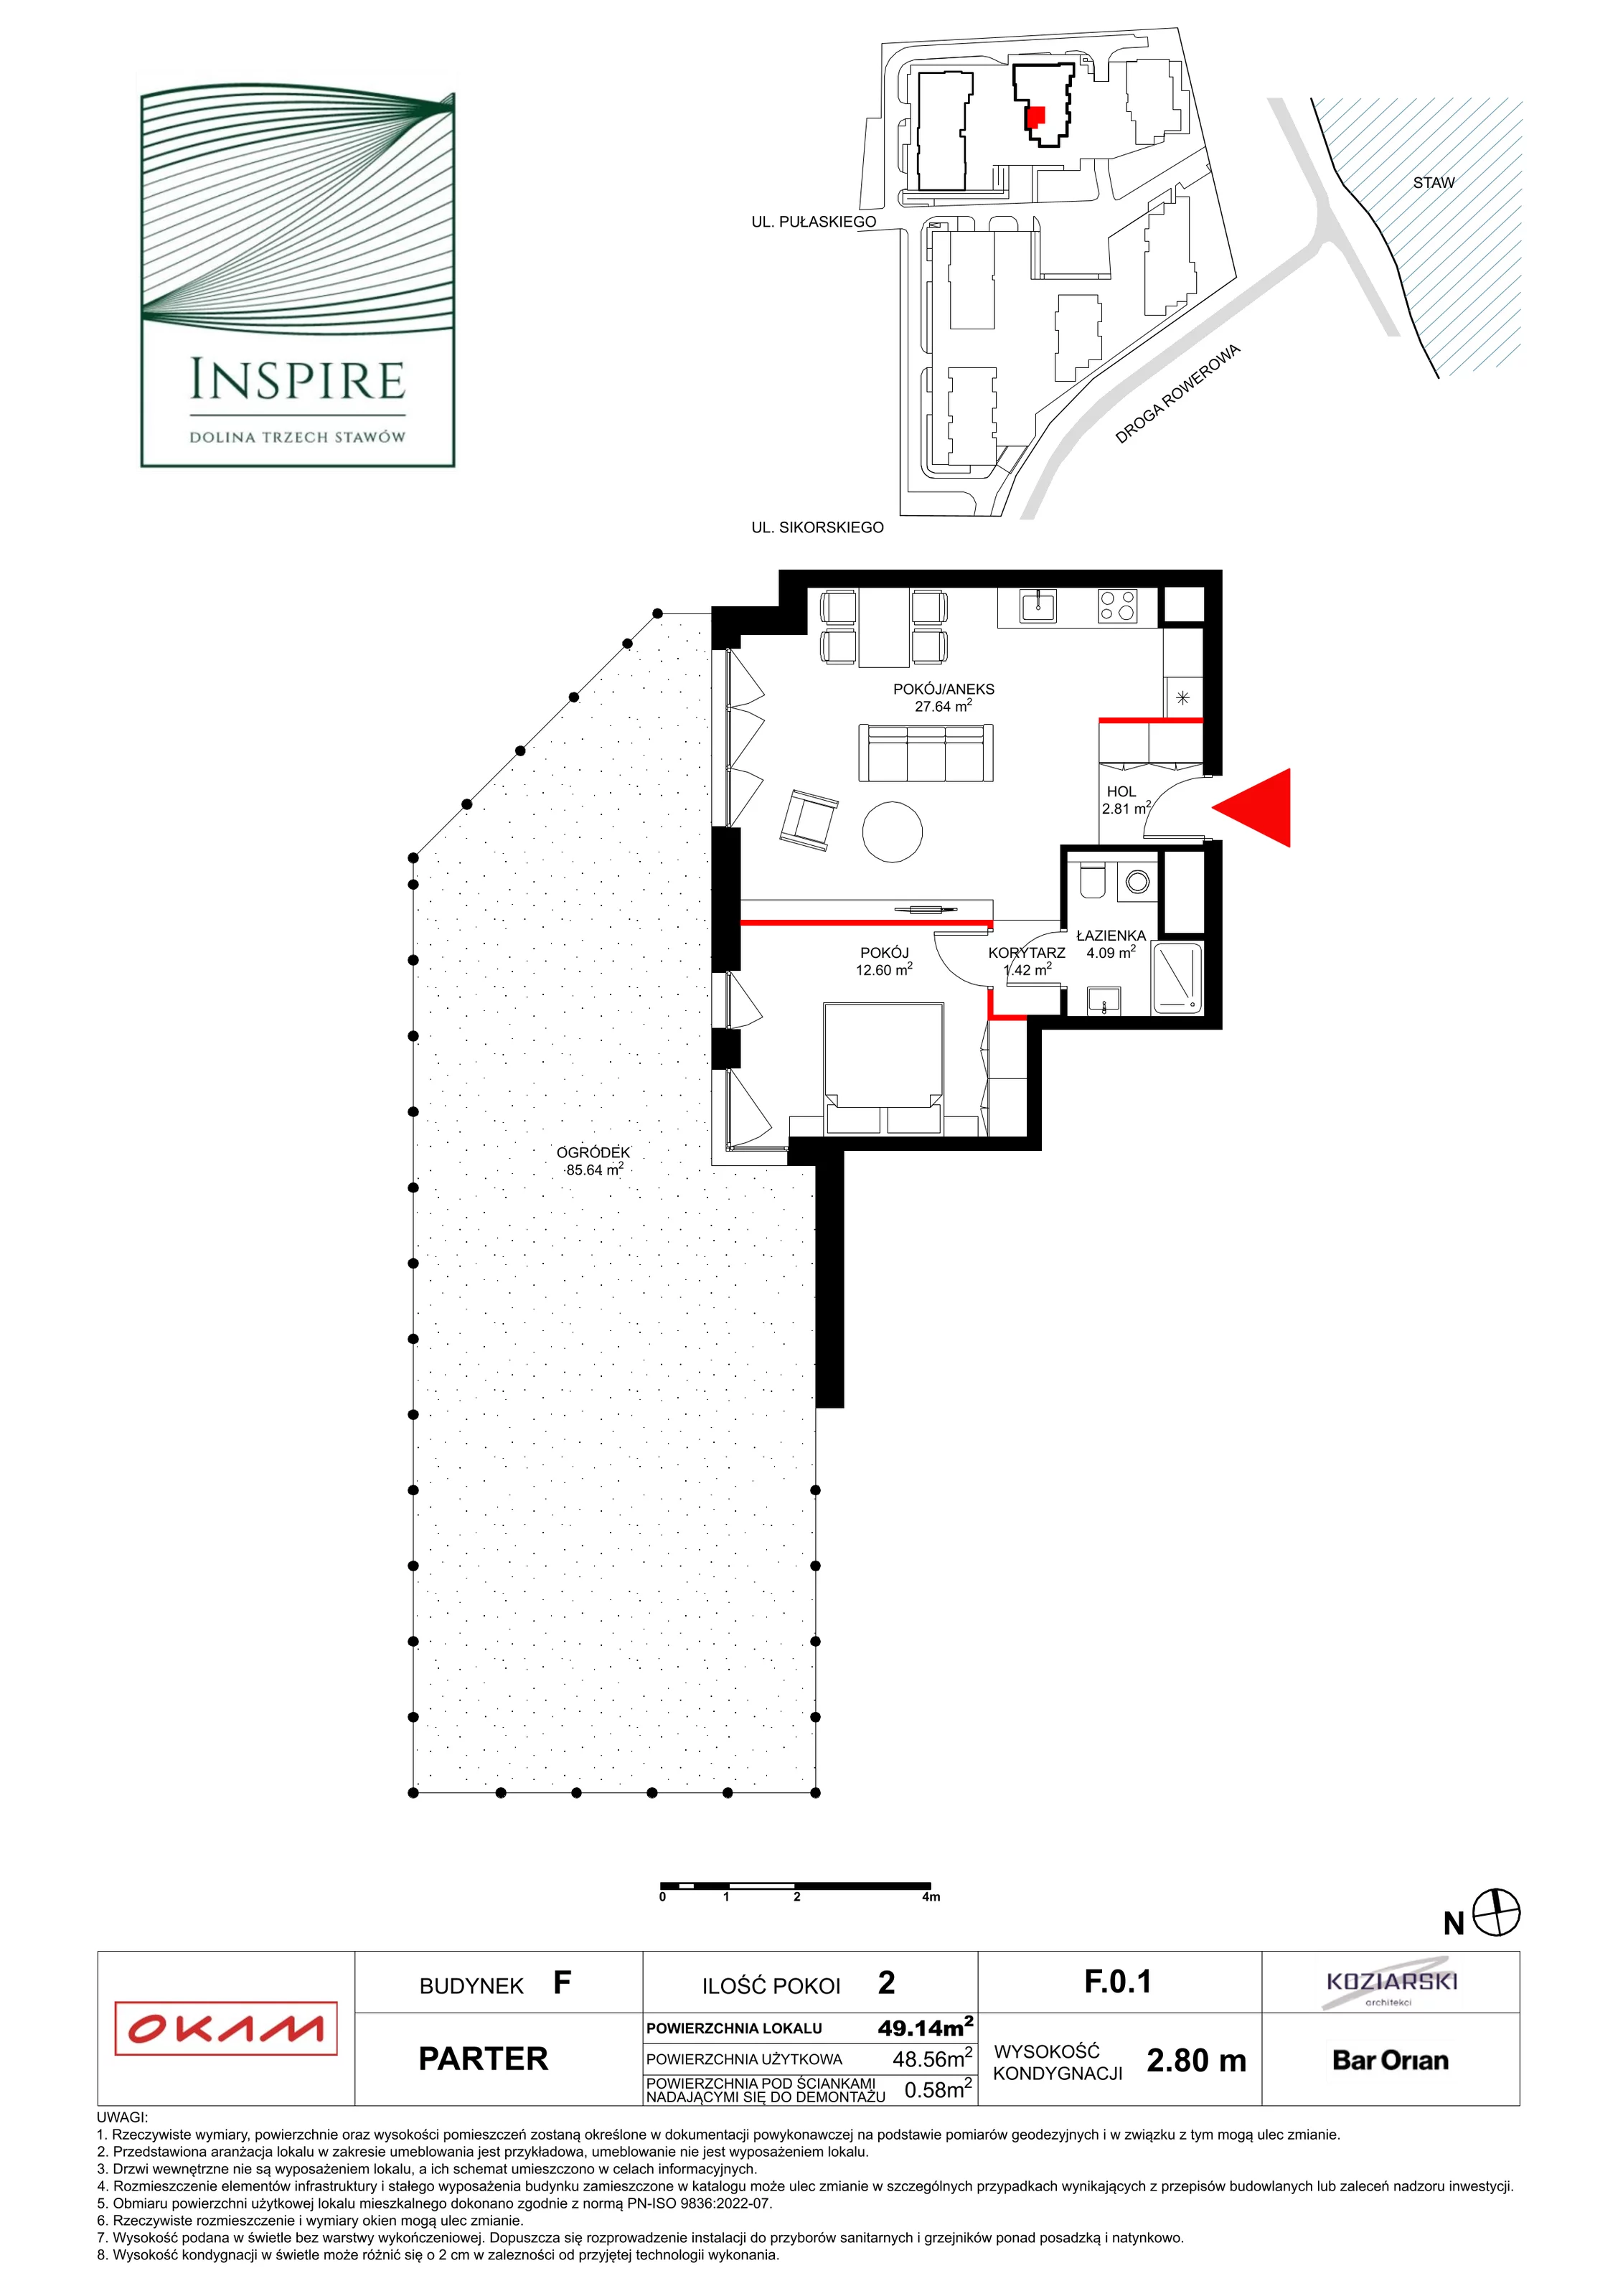 Apartament 48,56 m², parter, oferta nr F.0.1, Inspire, Katowice, Osiedle Paderewskiego-Muchowiec, Dolina Trzech Stawów, ul. gen. Sikorskiego 41